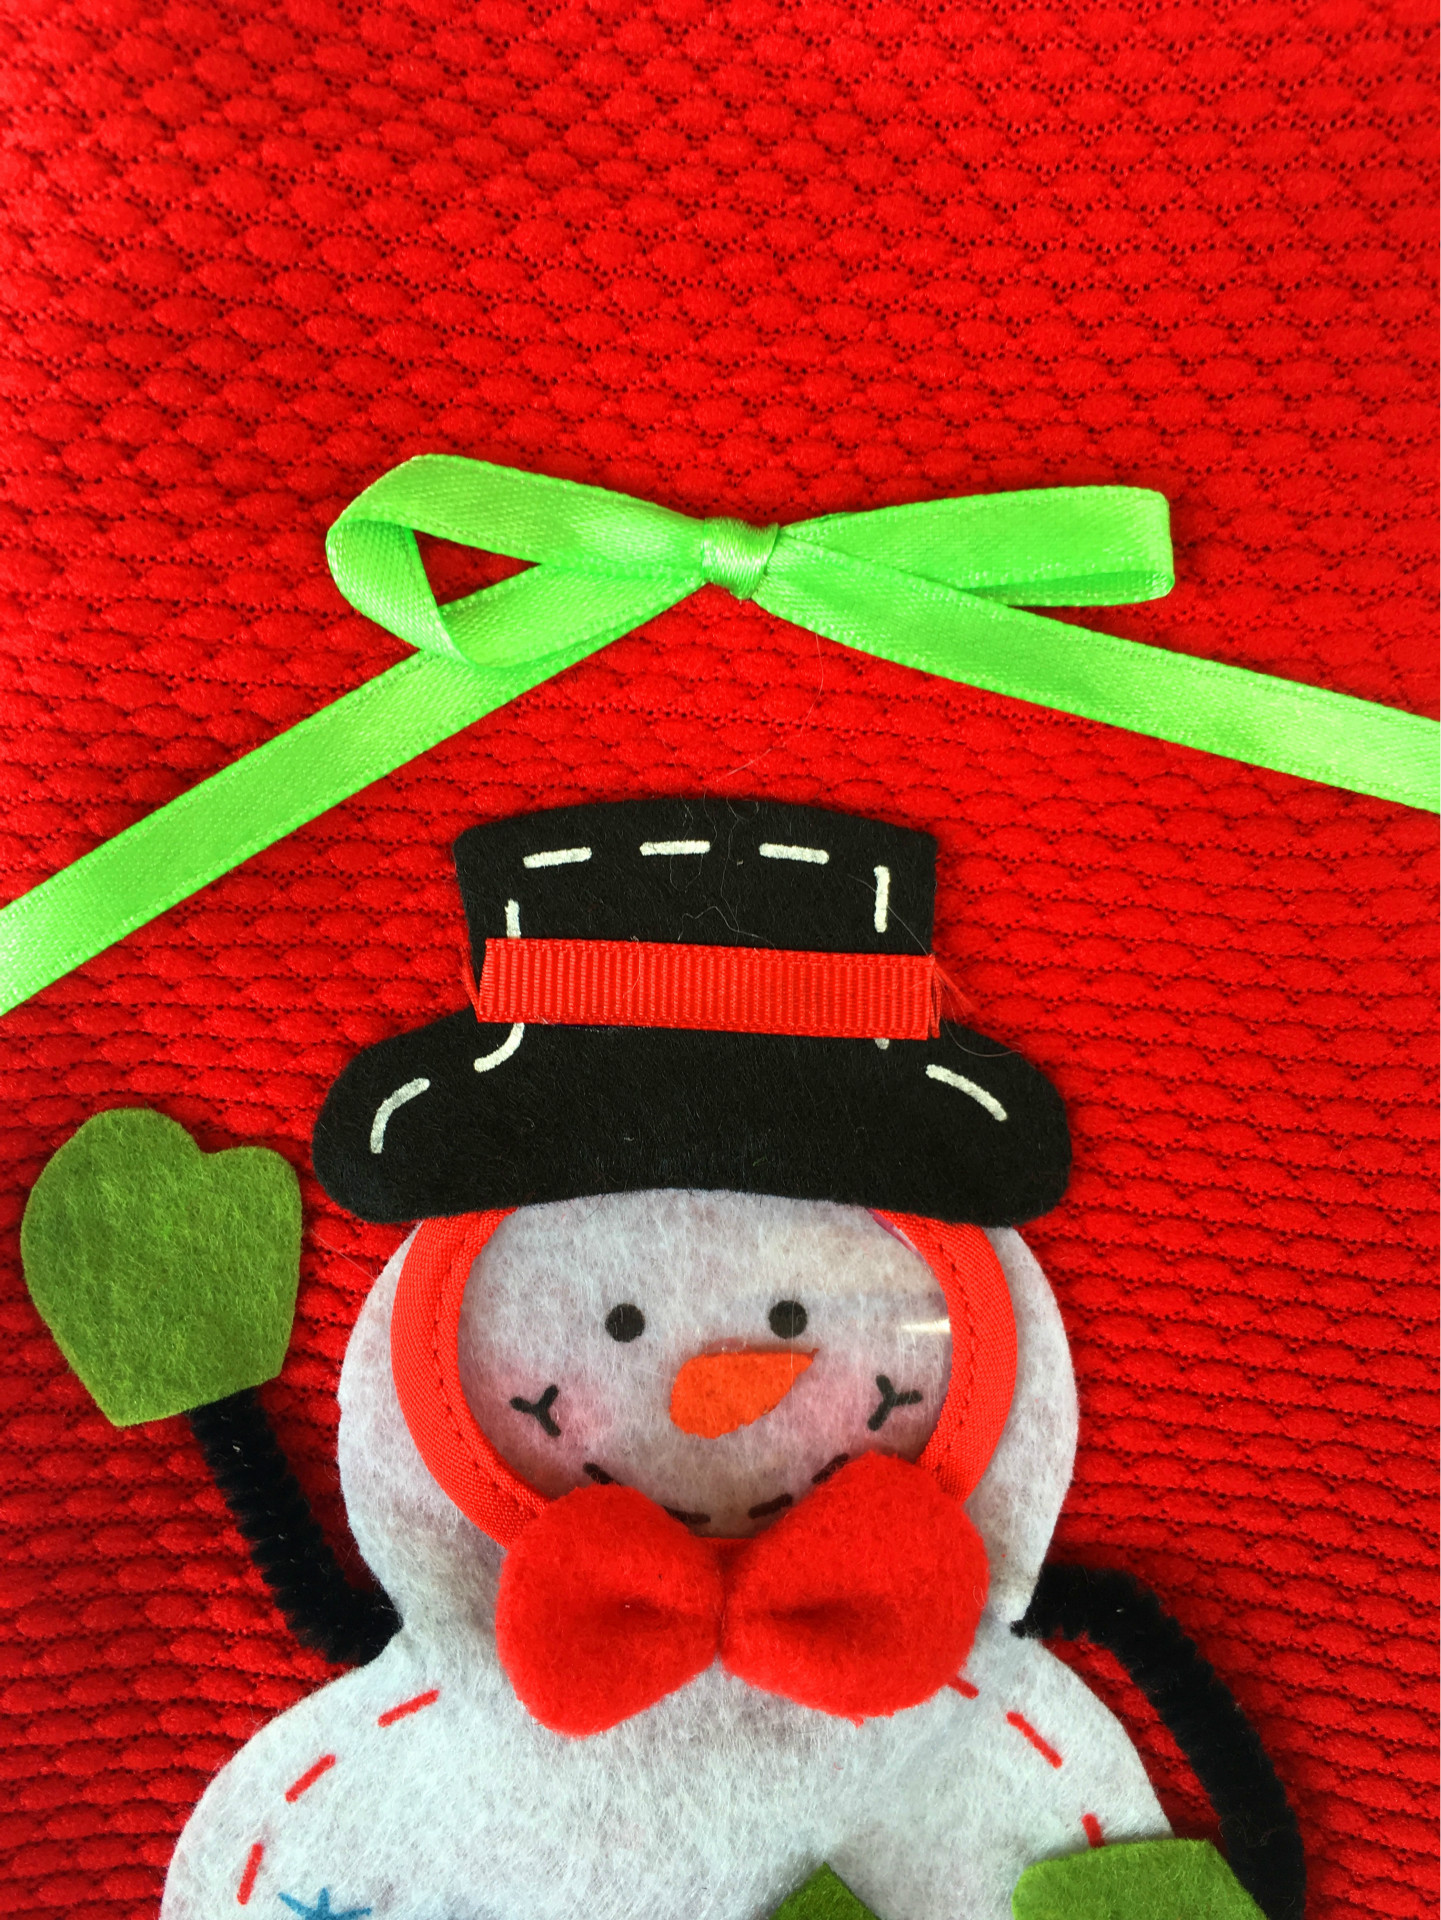 立體聖誕雪人糖果袋 禮品袋 創意家居 實用禮品 聖誕節必備 聖誕禮物袋3